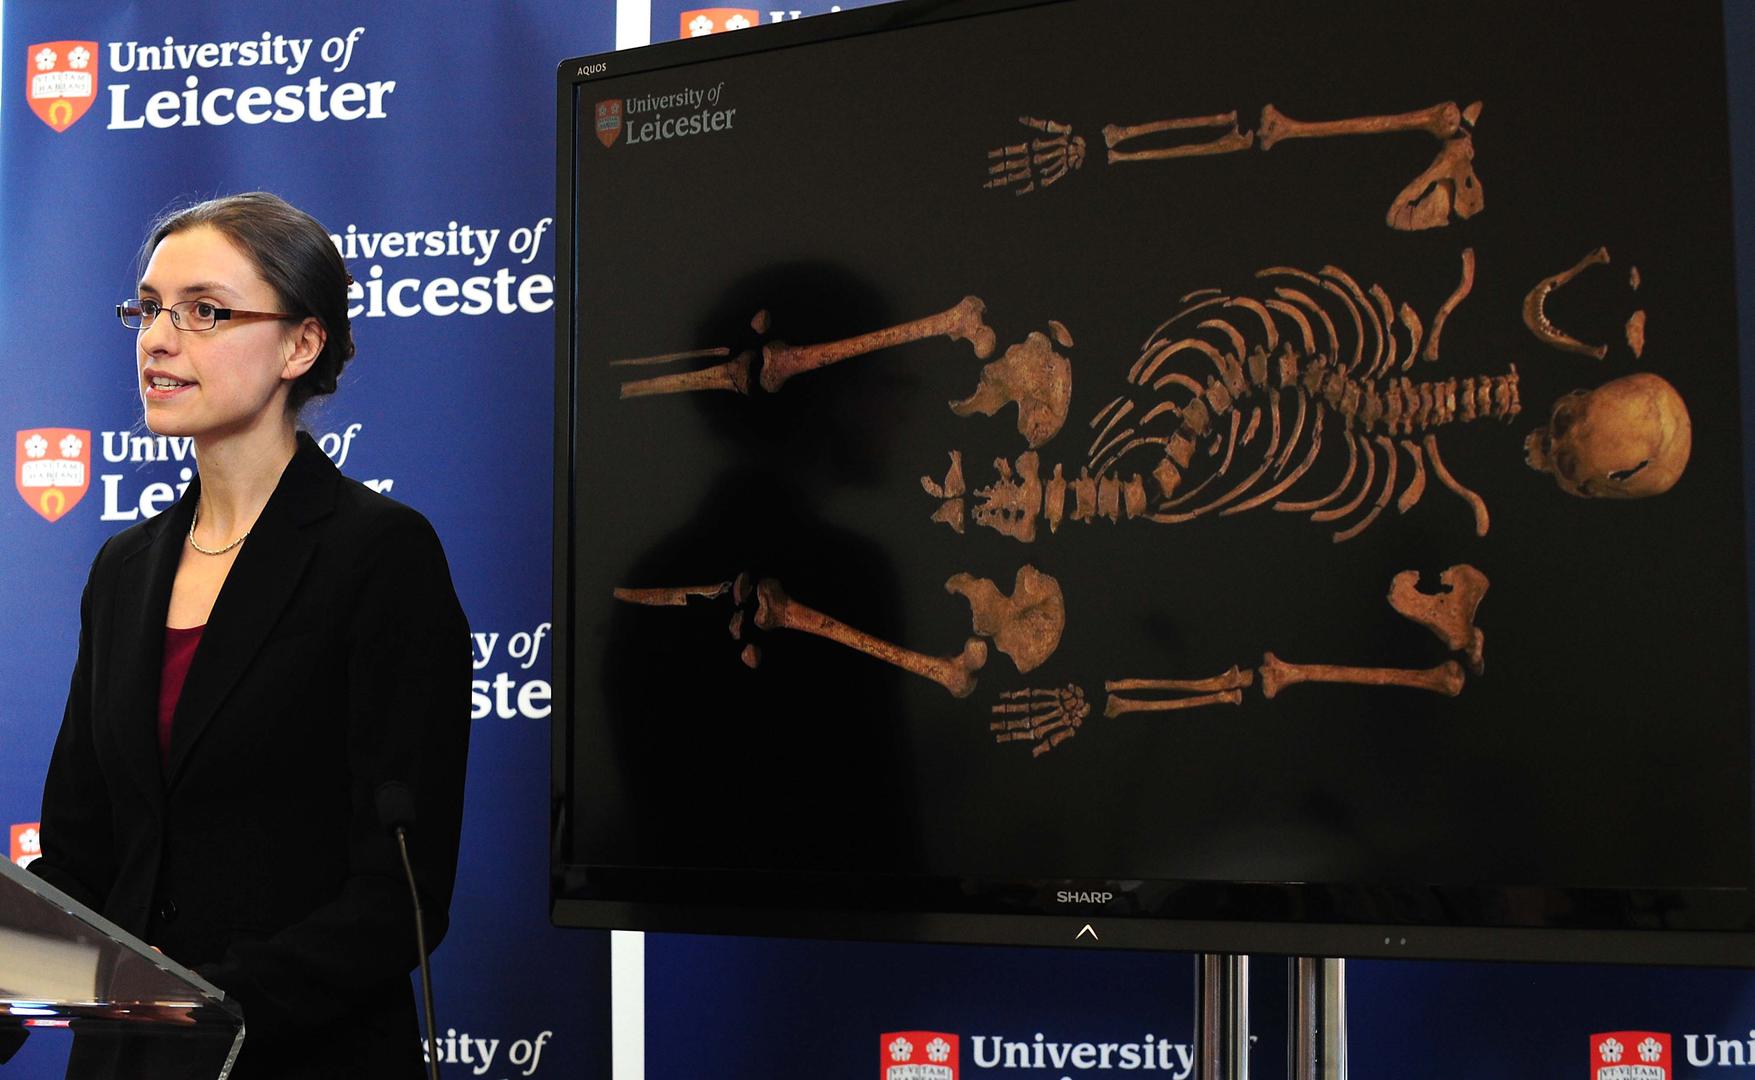 Za kostur nađen ispod parkirališta u Leicesetru genetičari i povjesničari nepobitno su dokazali da pripada Rikardu III. 